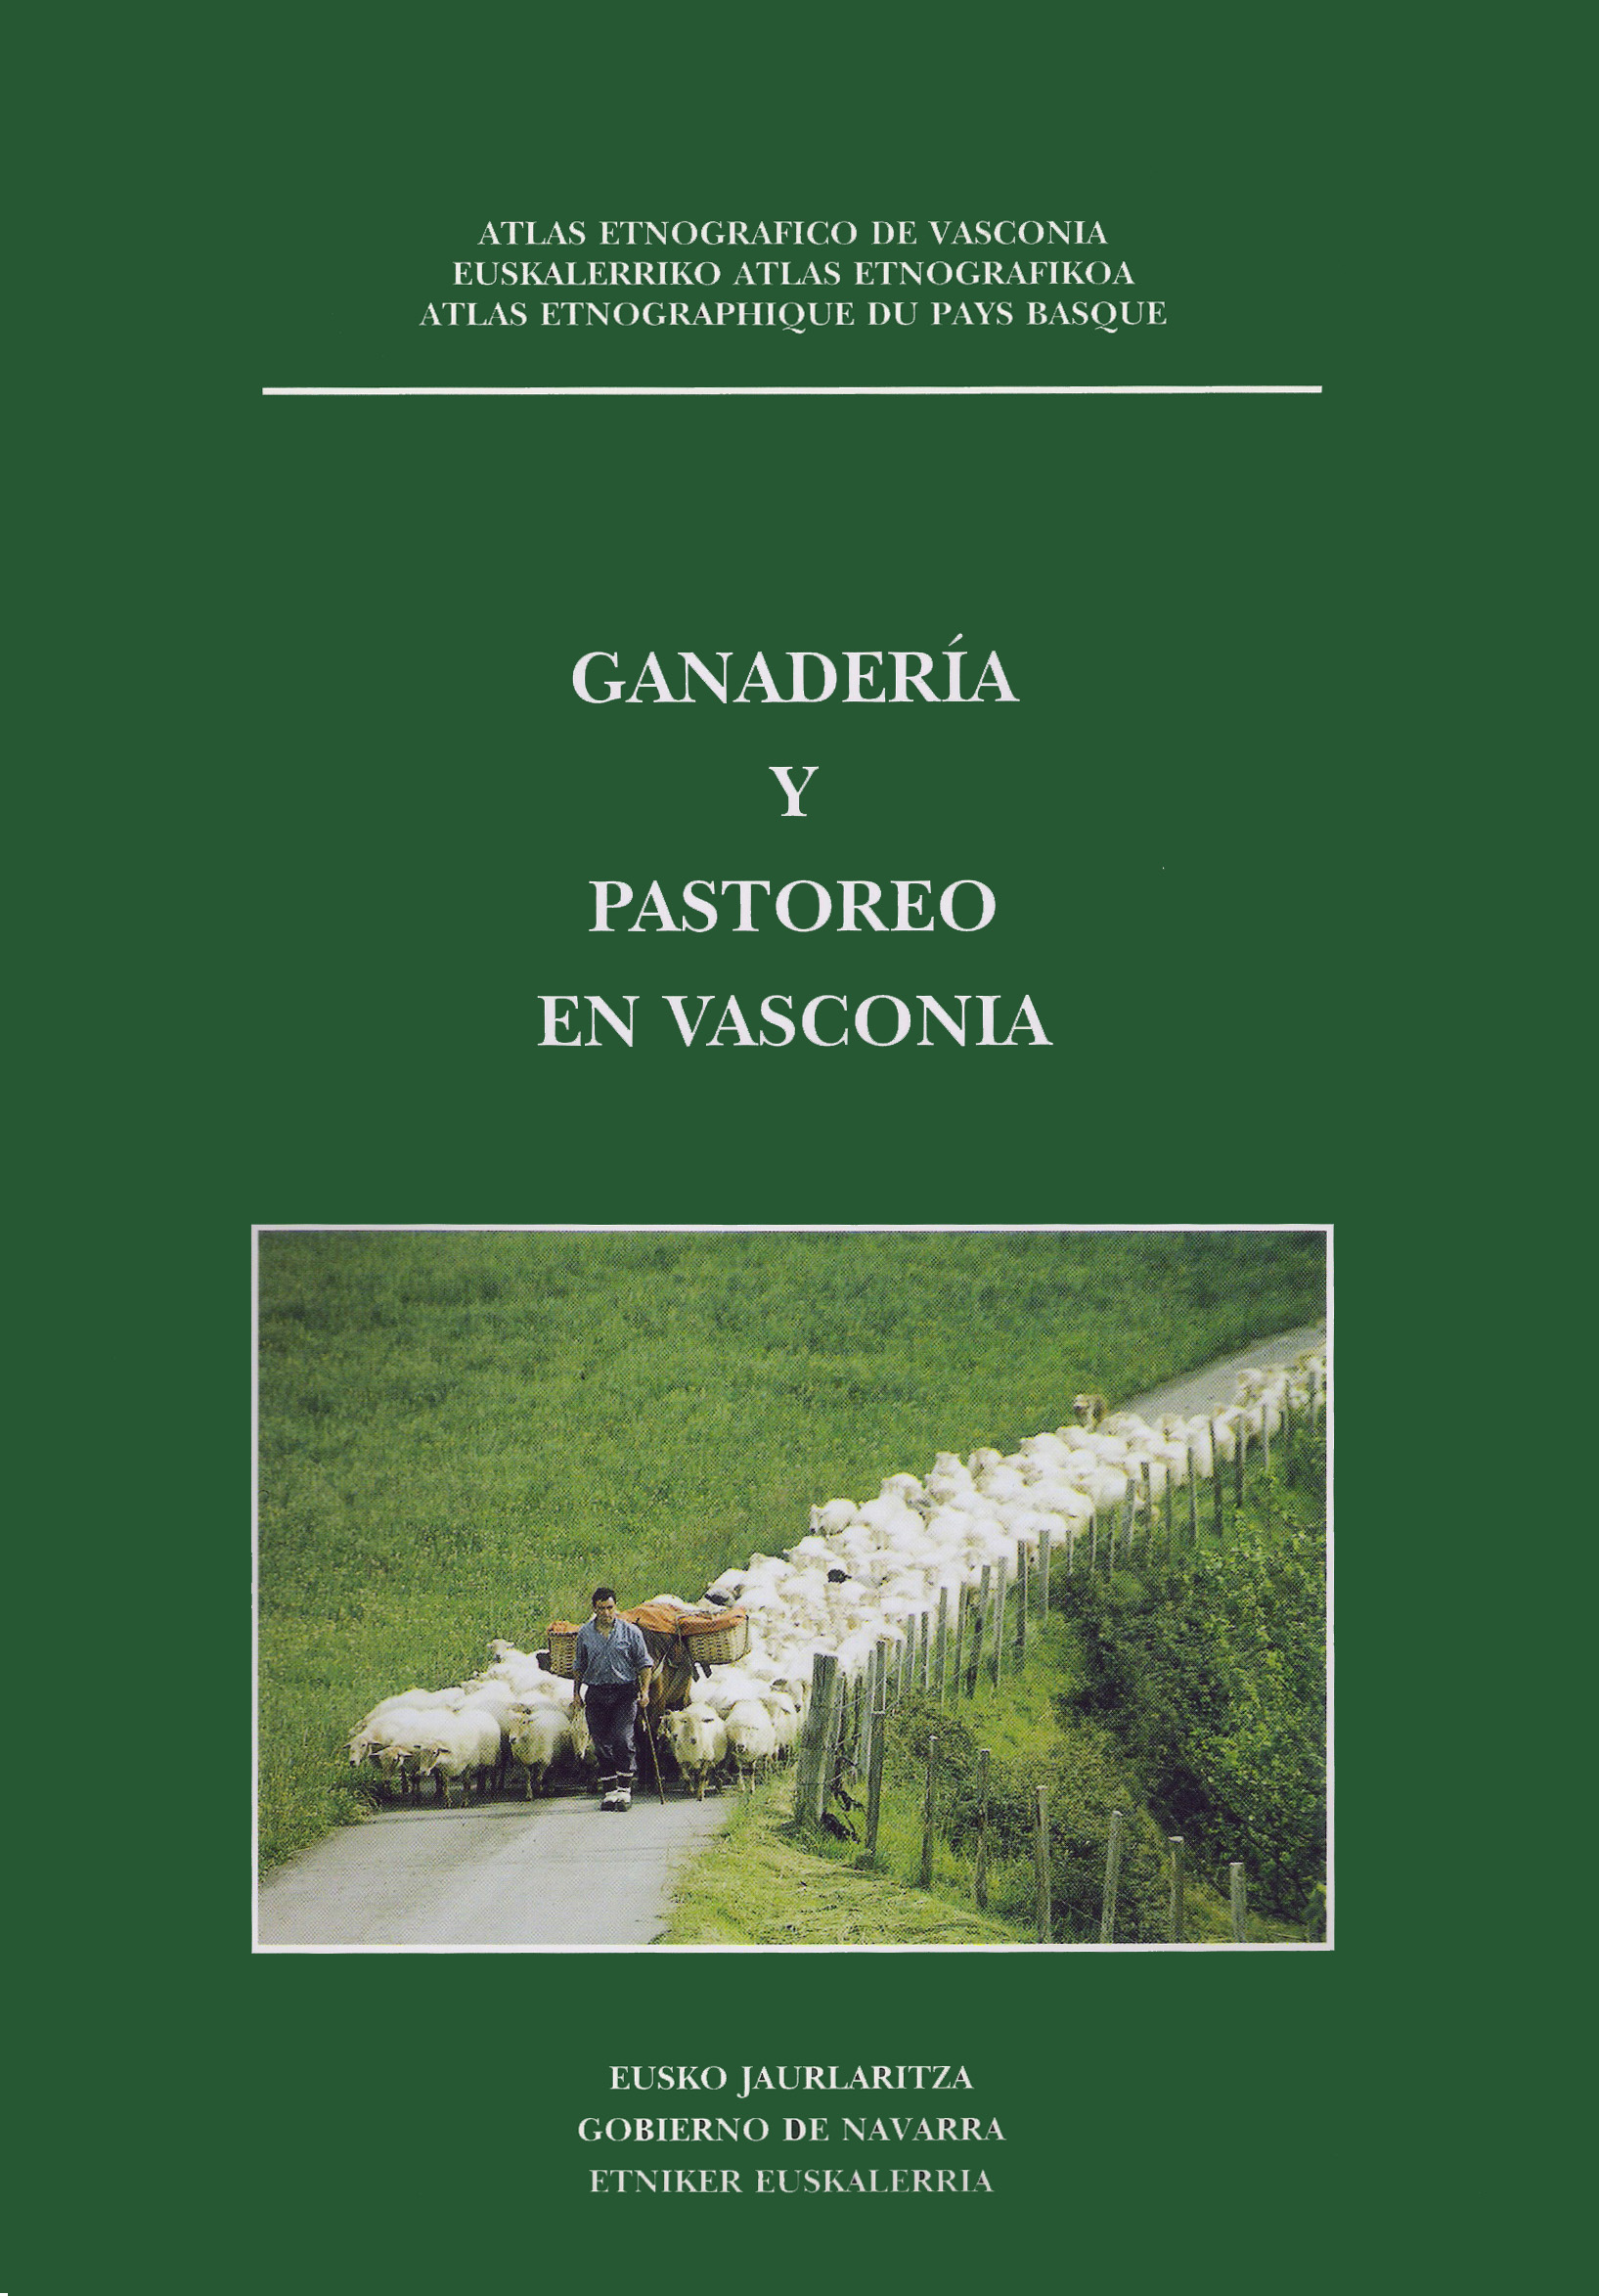 03 Ganaderia y pastoreo en vasconia Portada.jpg